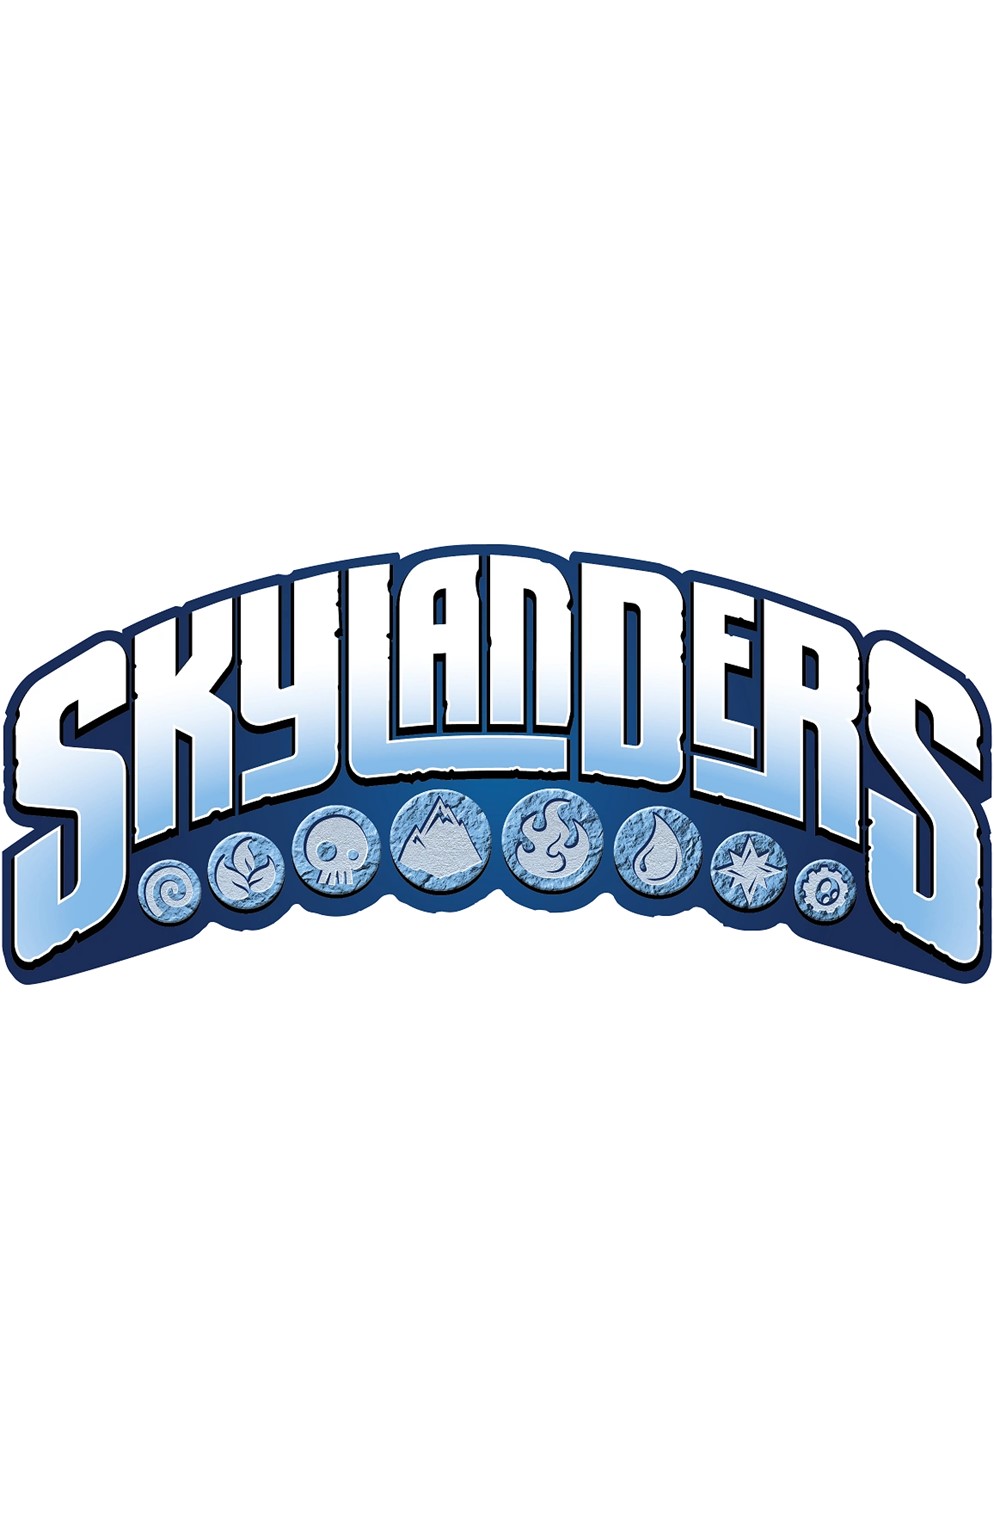 Skylanders Giants Loose Preowned